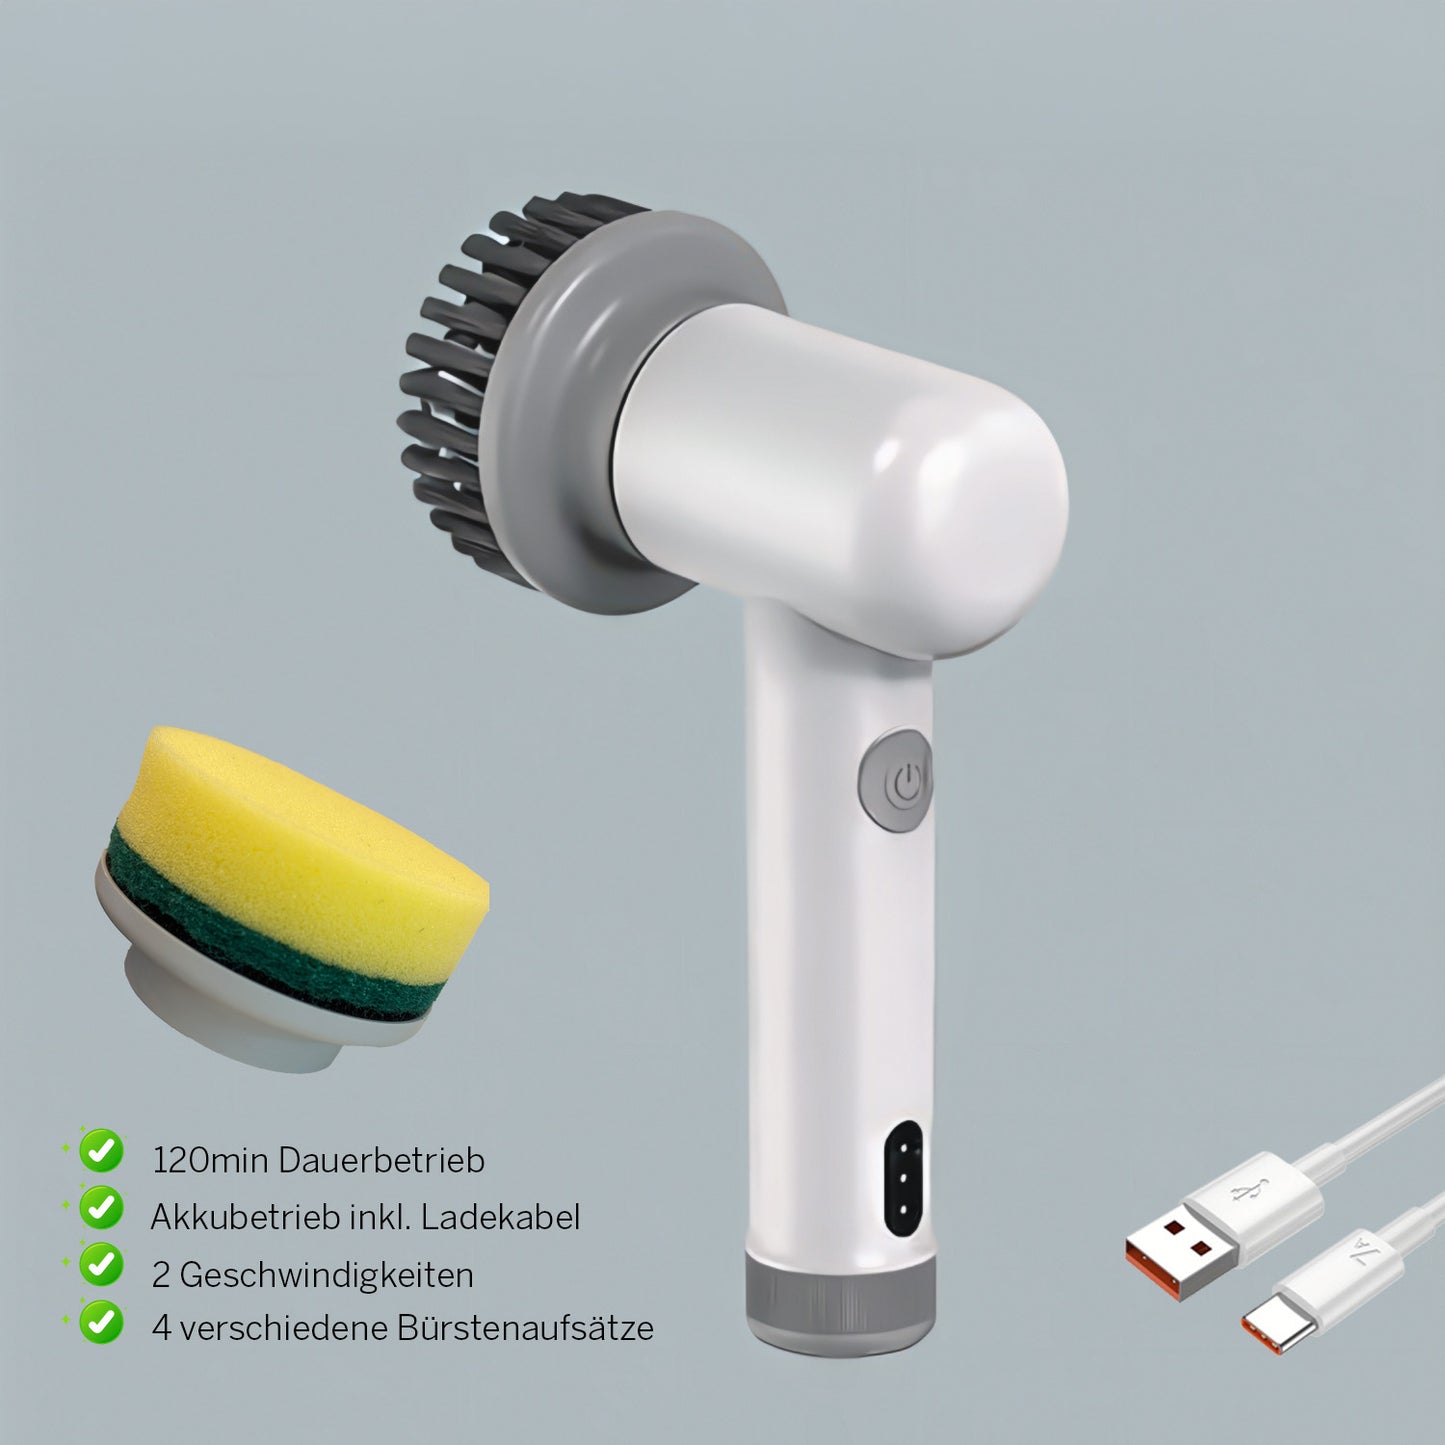 Easy Brush 2.0 ✧ spazzola elettrica per la pulizia ✧ inclusi 2 accessori per spazzole (spugna e spazzola)